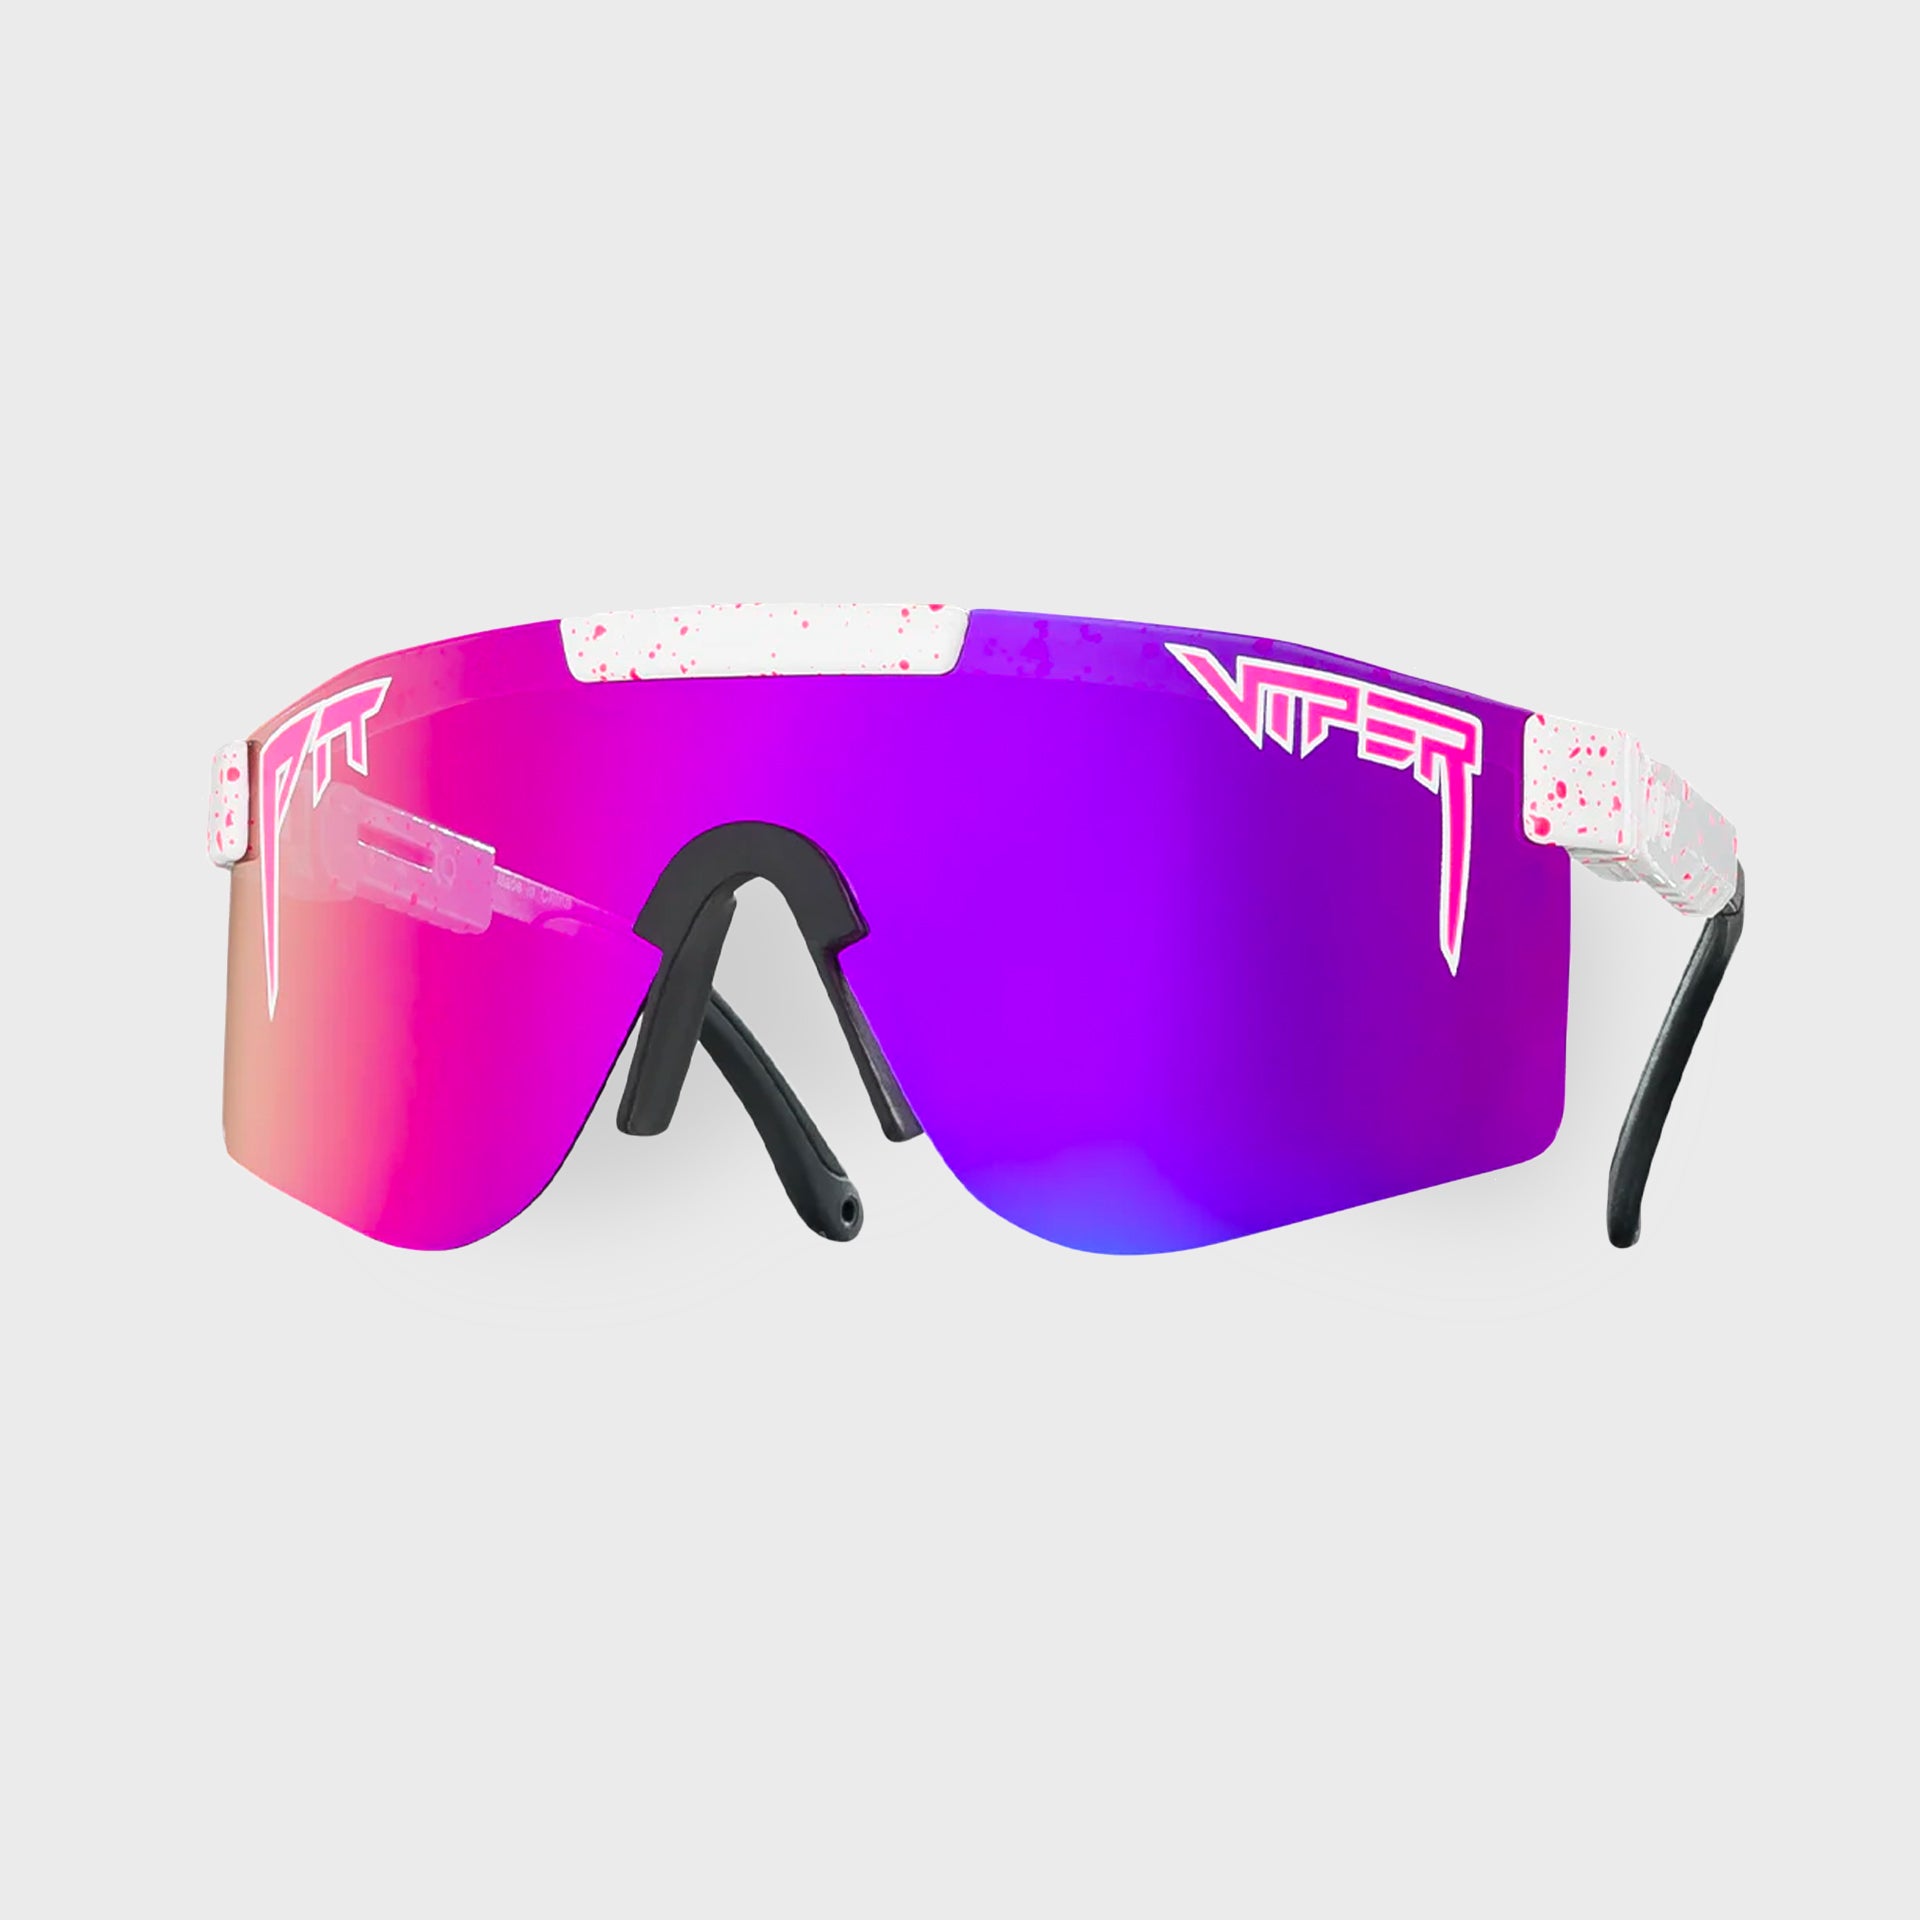 Pit Viper The LA Brights Polarized Single Wide Sunglasses - ManGo Surfing